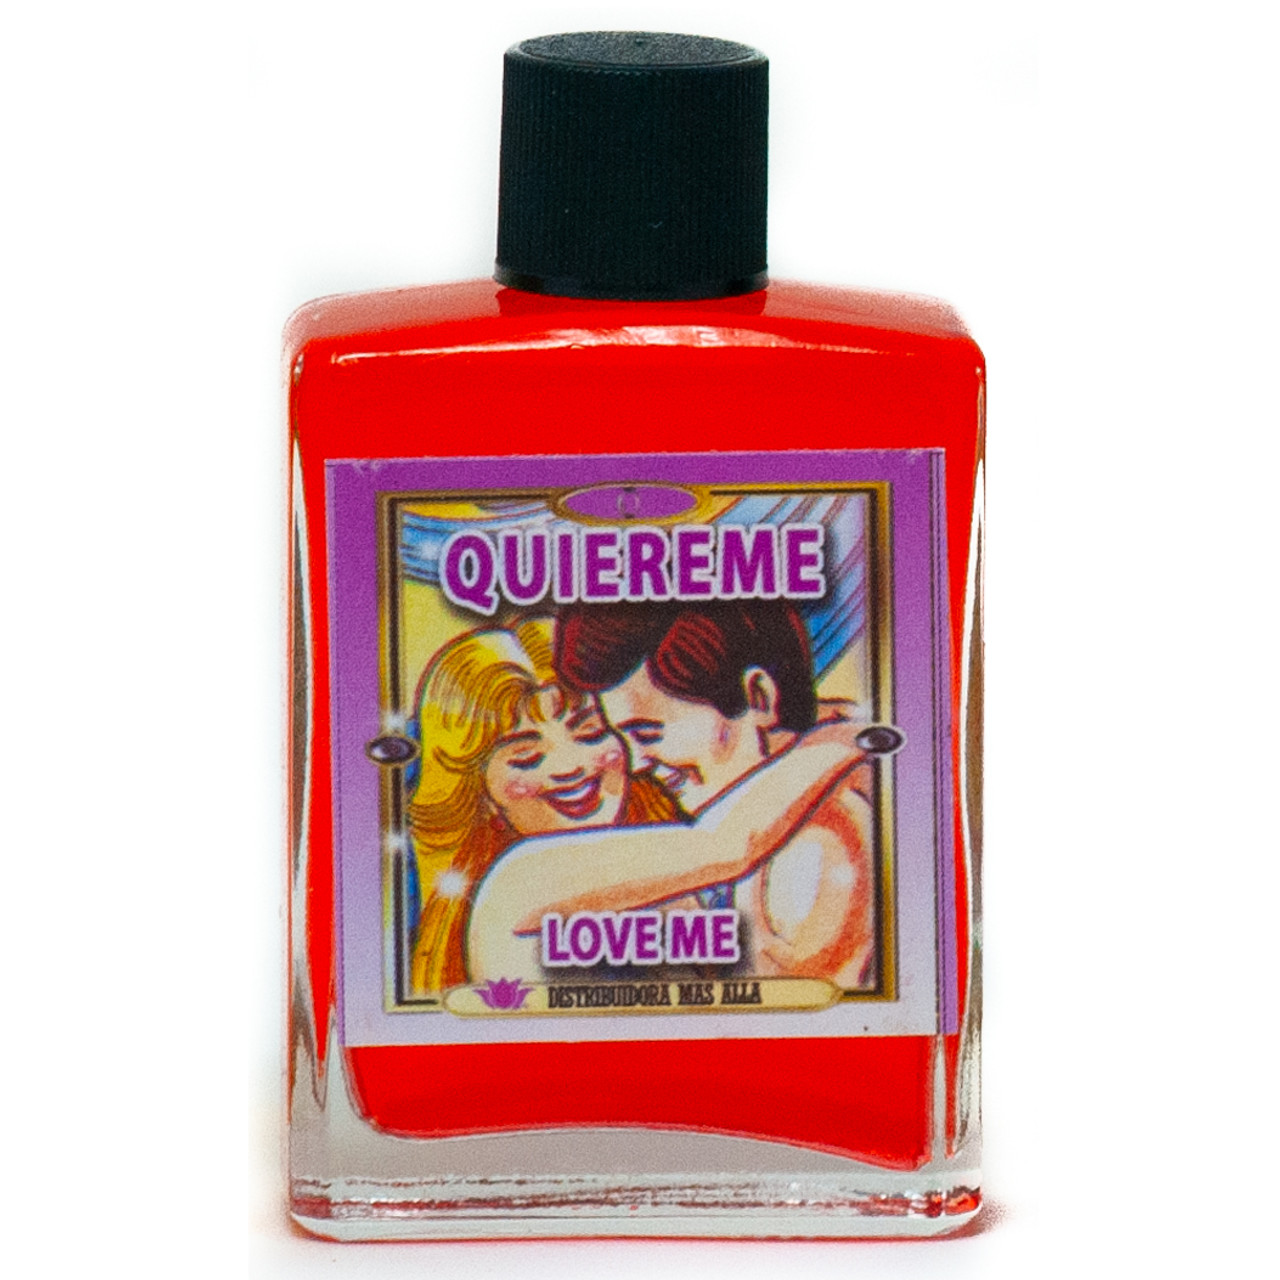 Perfume Quiereme - Love Me Perfume